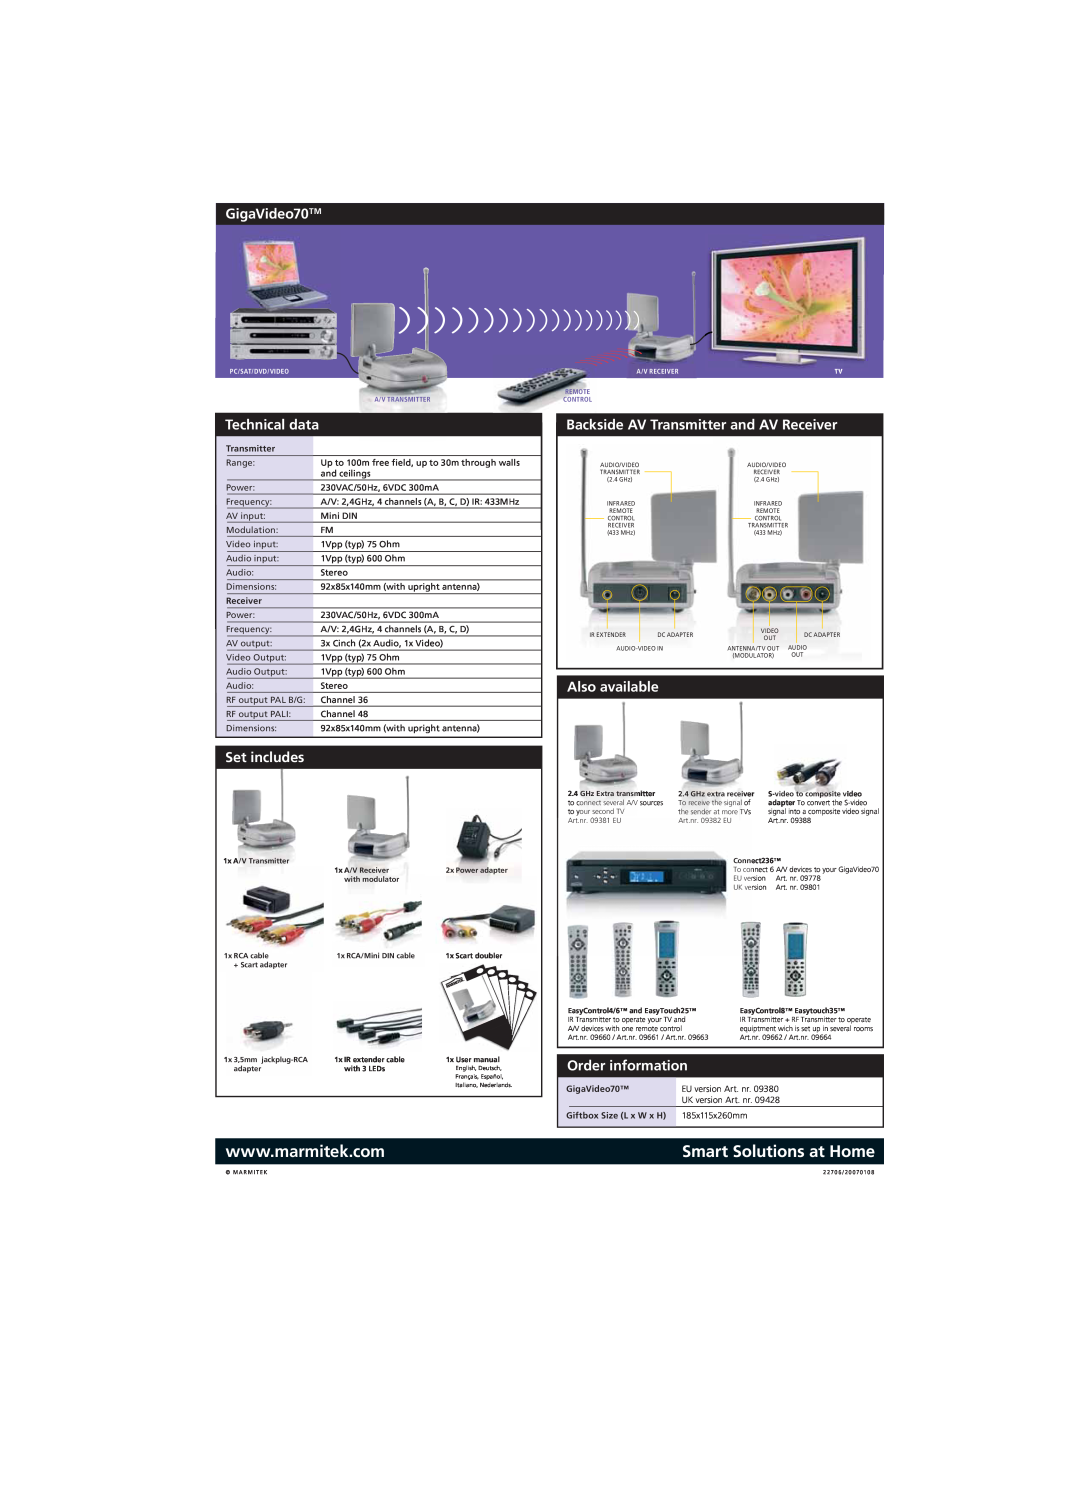 Marmitek manual GigaVideo70TM, Set includes, Backside AV Transmitter and AV Receiver, Also available, Order information 